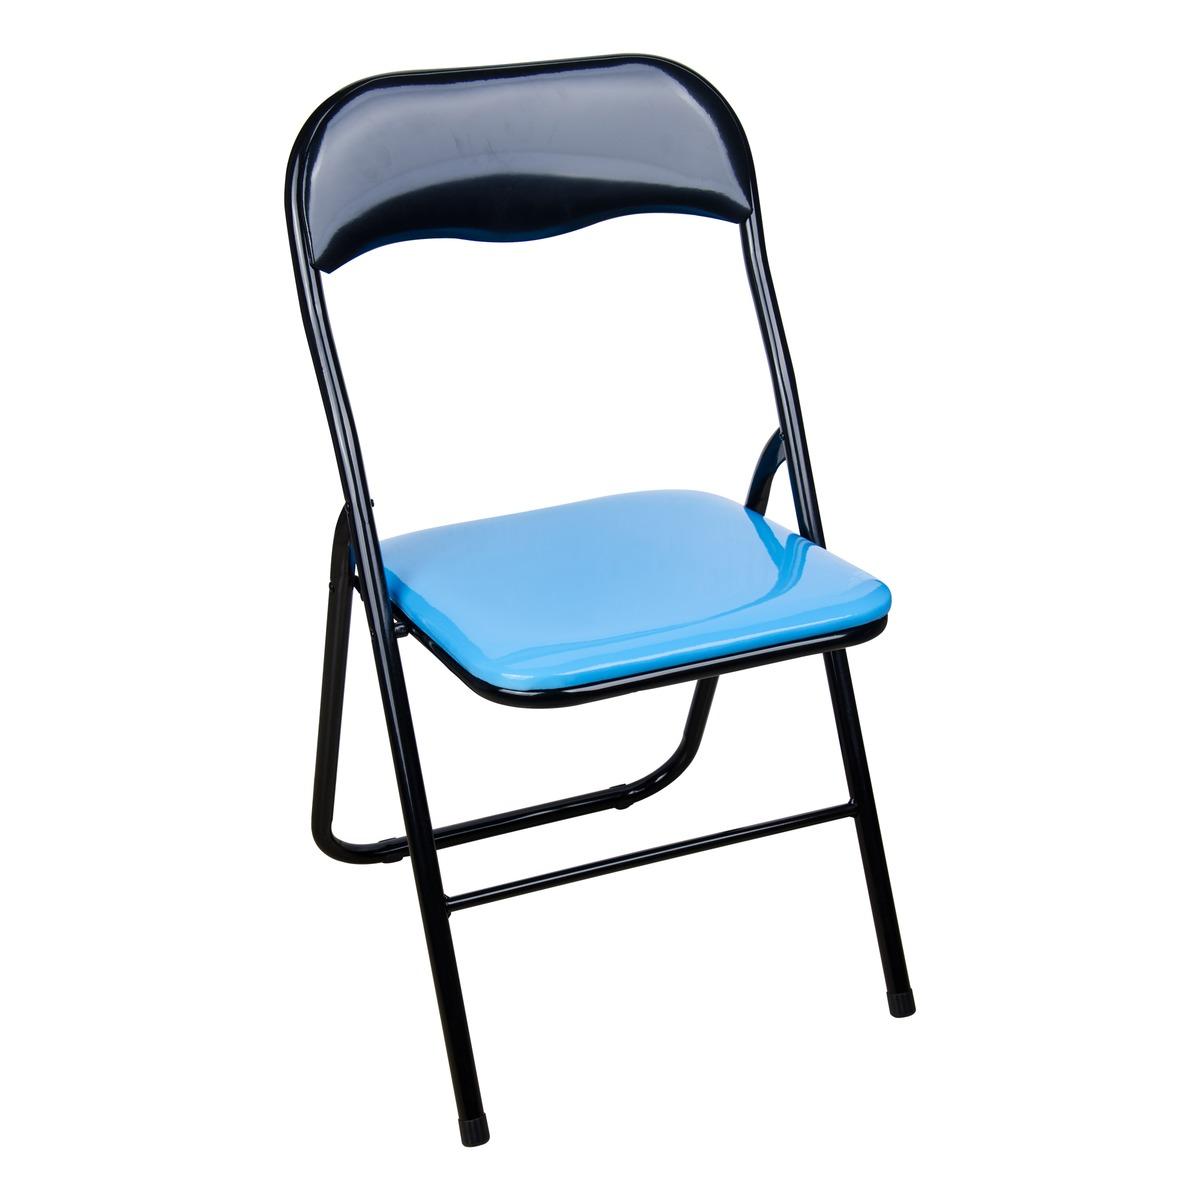 Chaise pliante bicolore - 44 x 47 x H 80 cm - Noir, Bleu